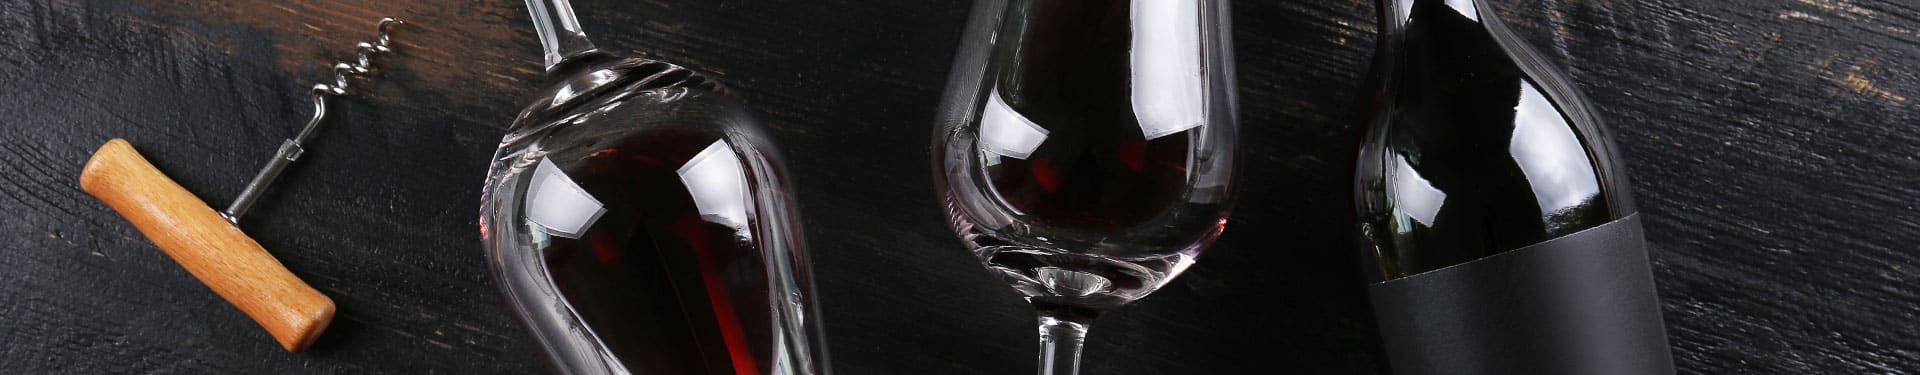 Deux verres de vin rouge, une bouteille de vin et un tire-bouchon posés sur une table en bois noire.